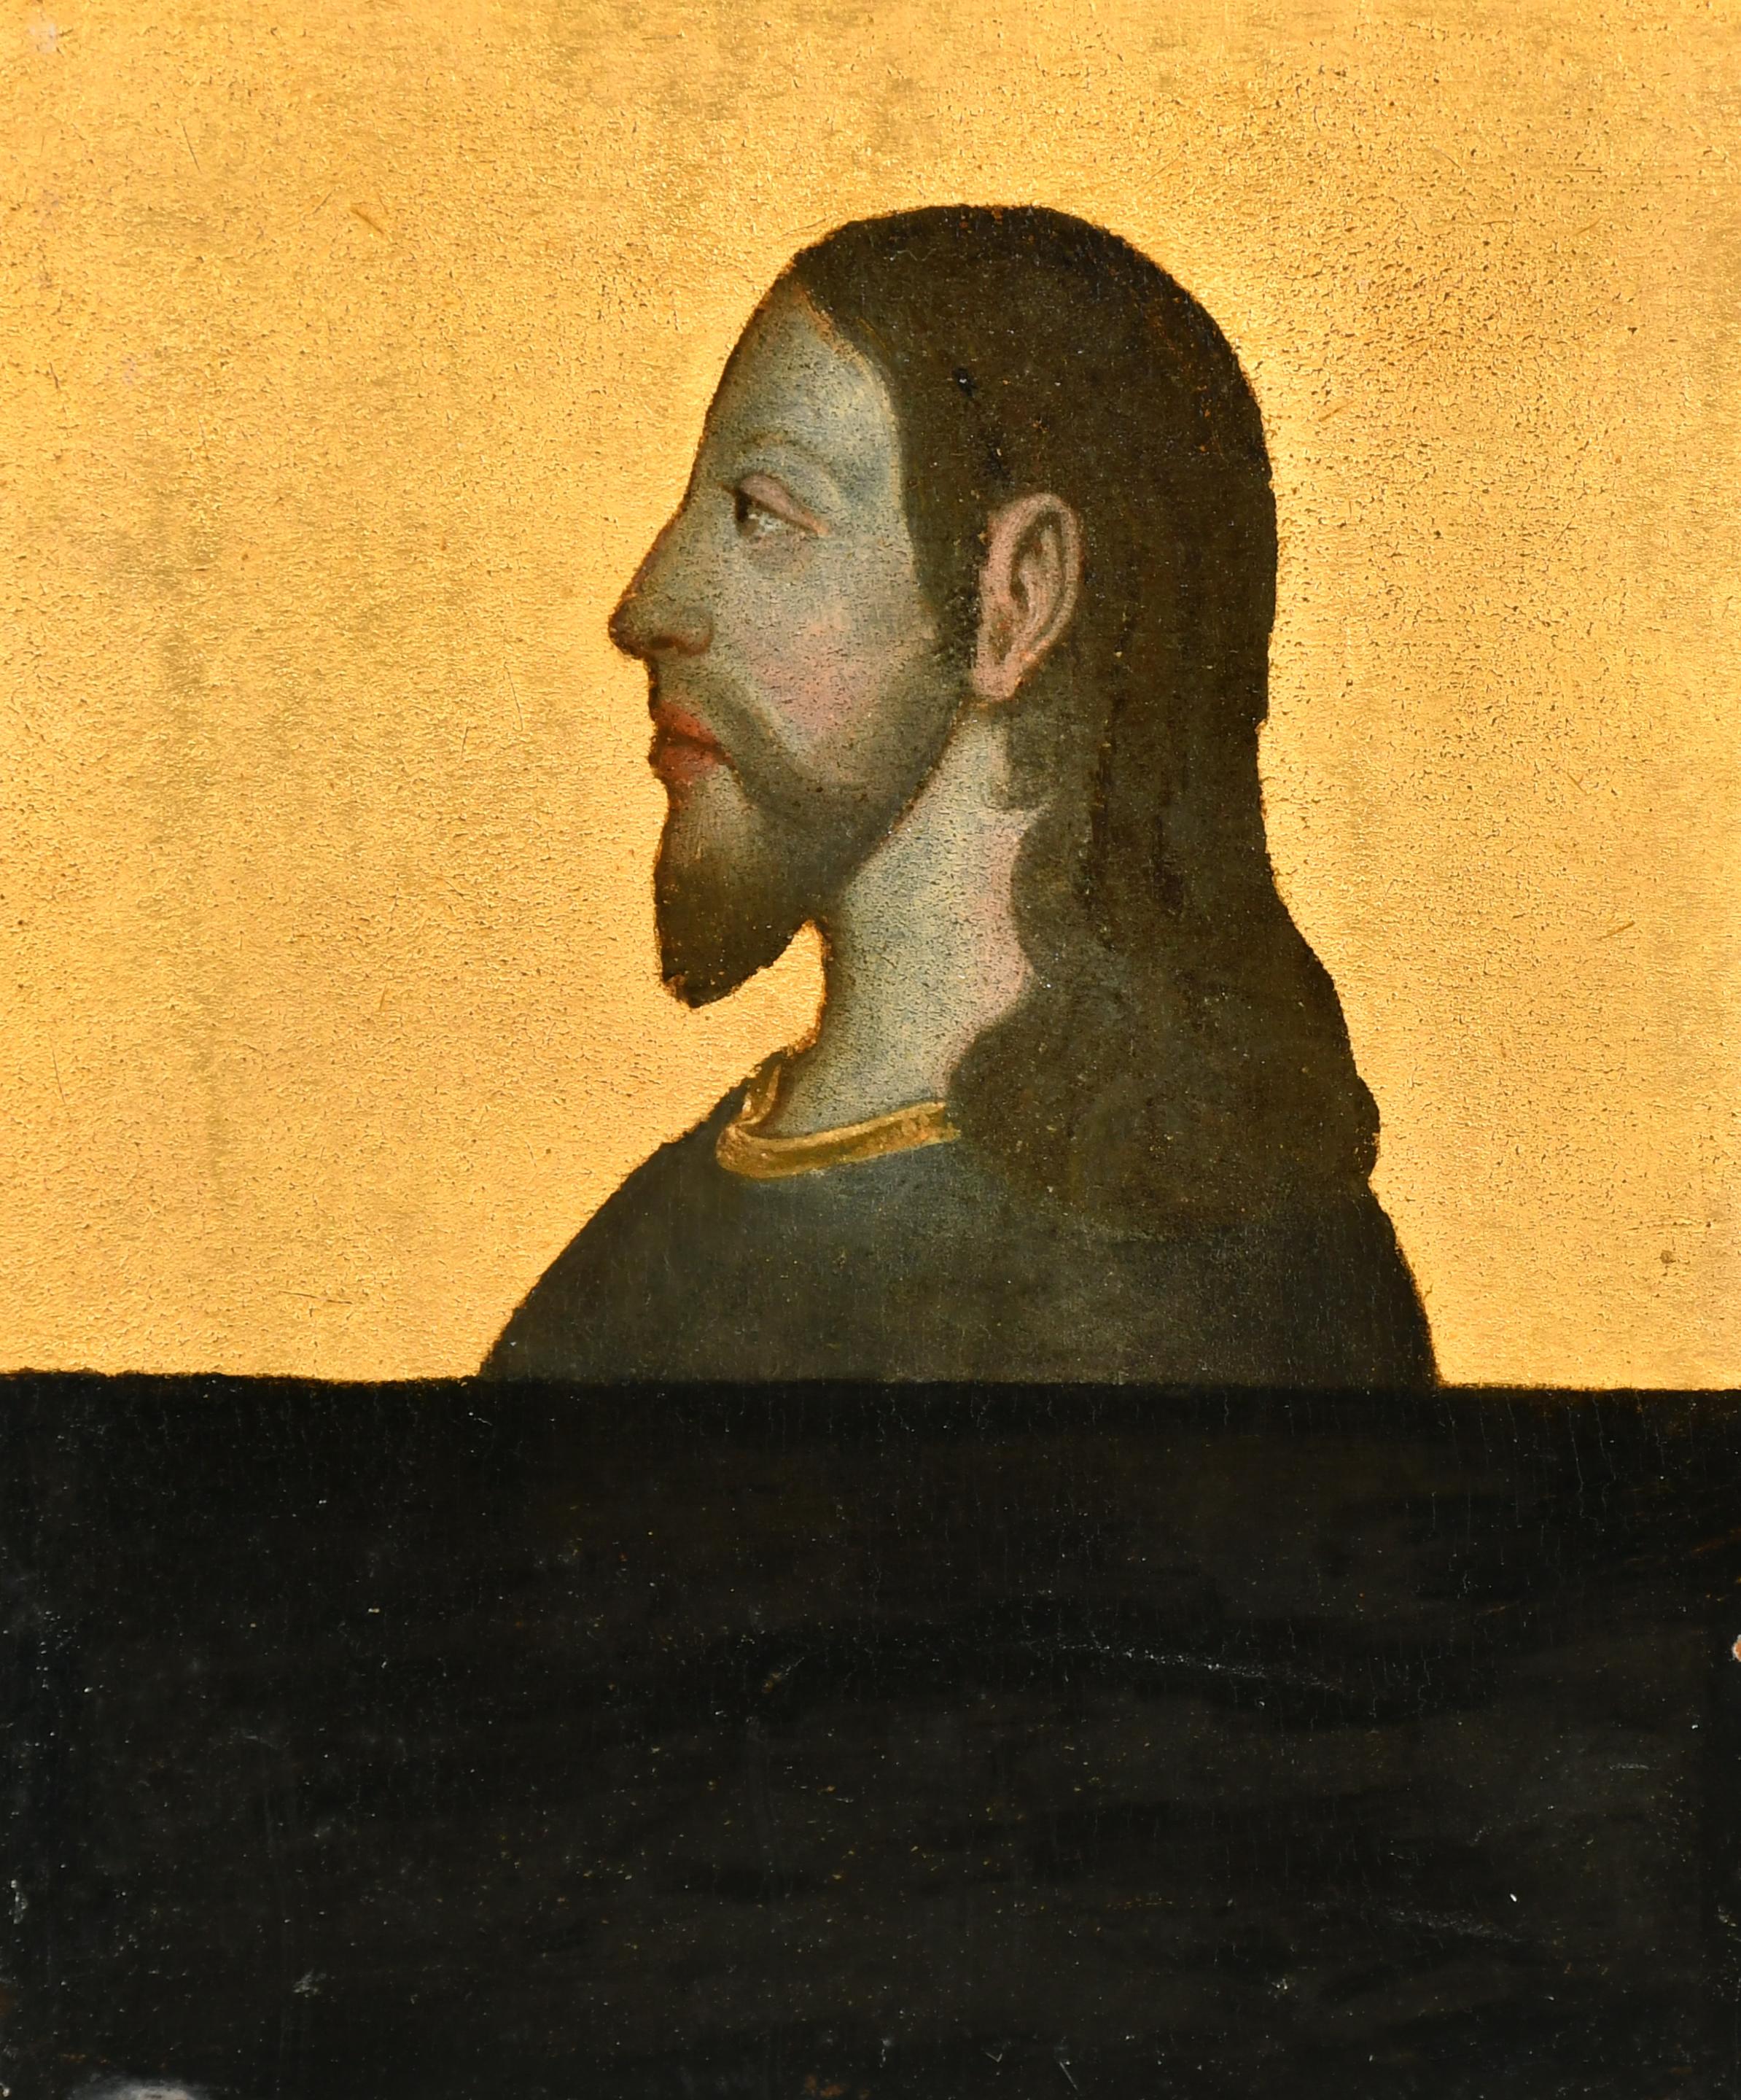 Kopfporträt im Renaissance-Stil von Christus, schönes antikes Ölgemälde